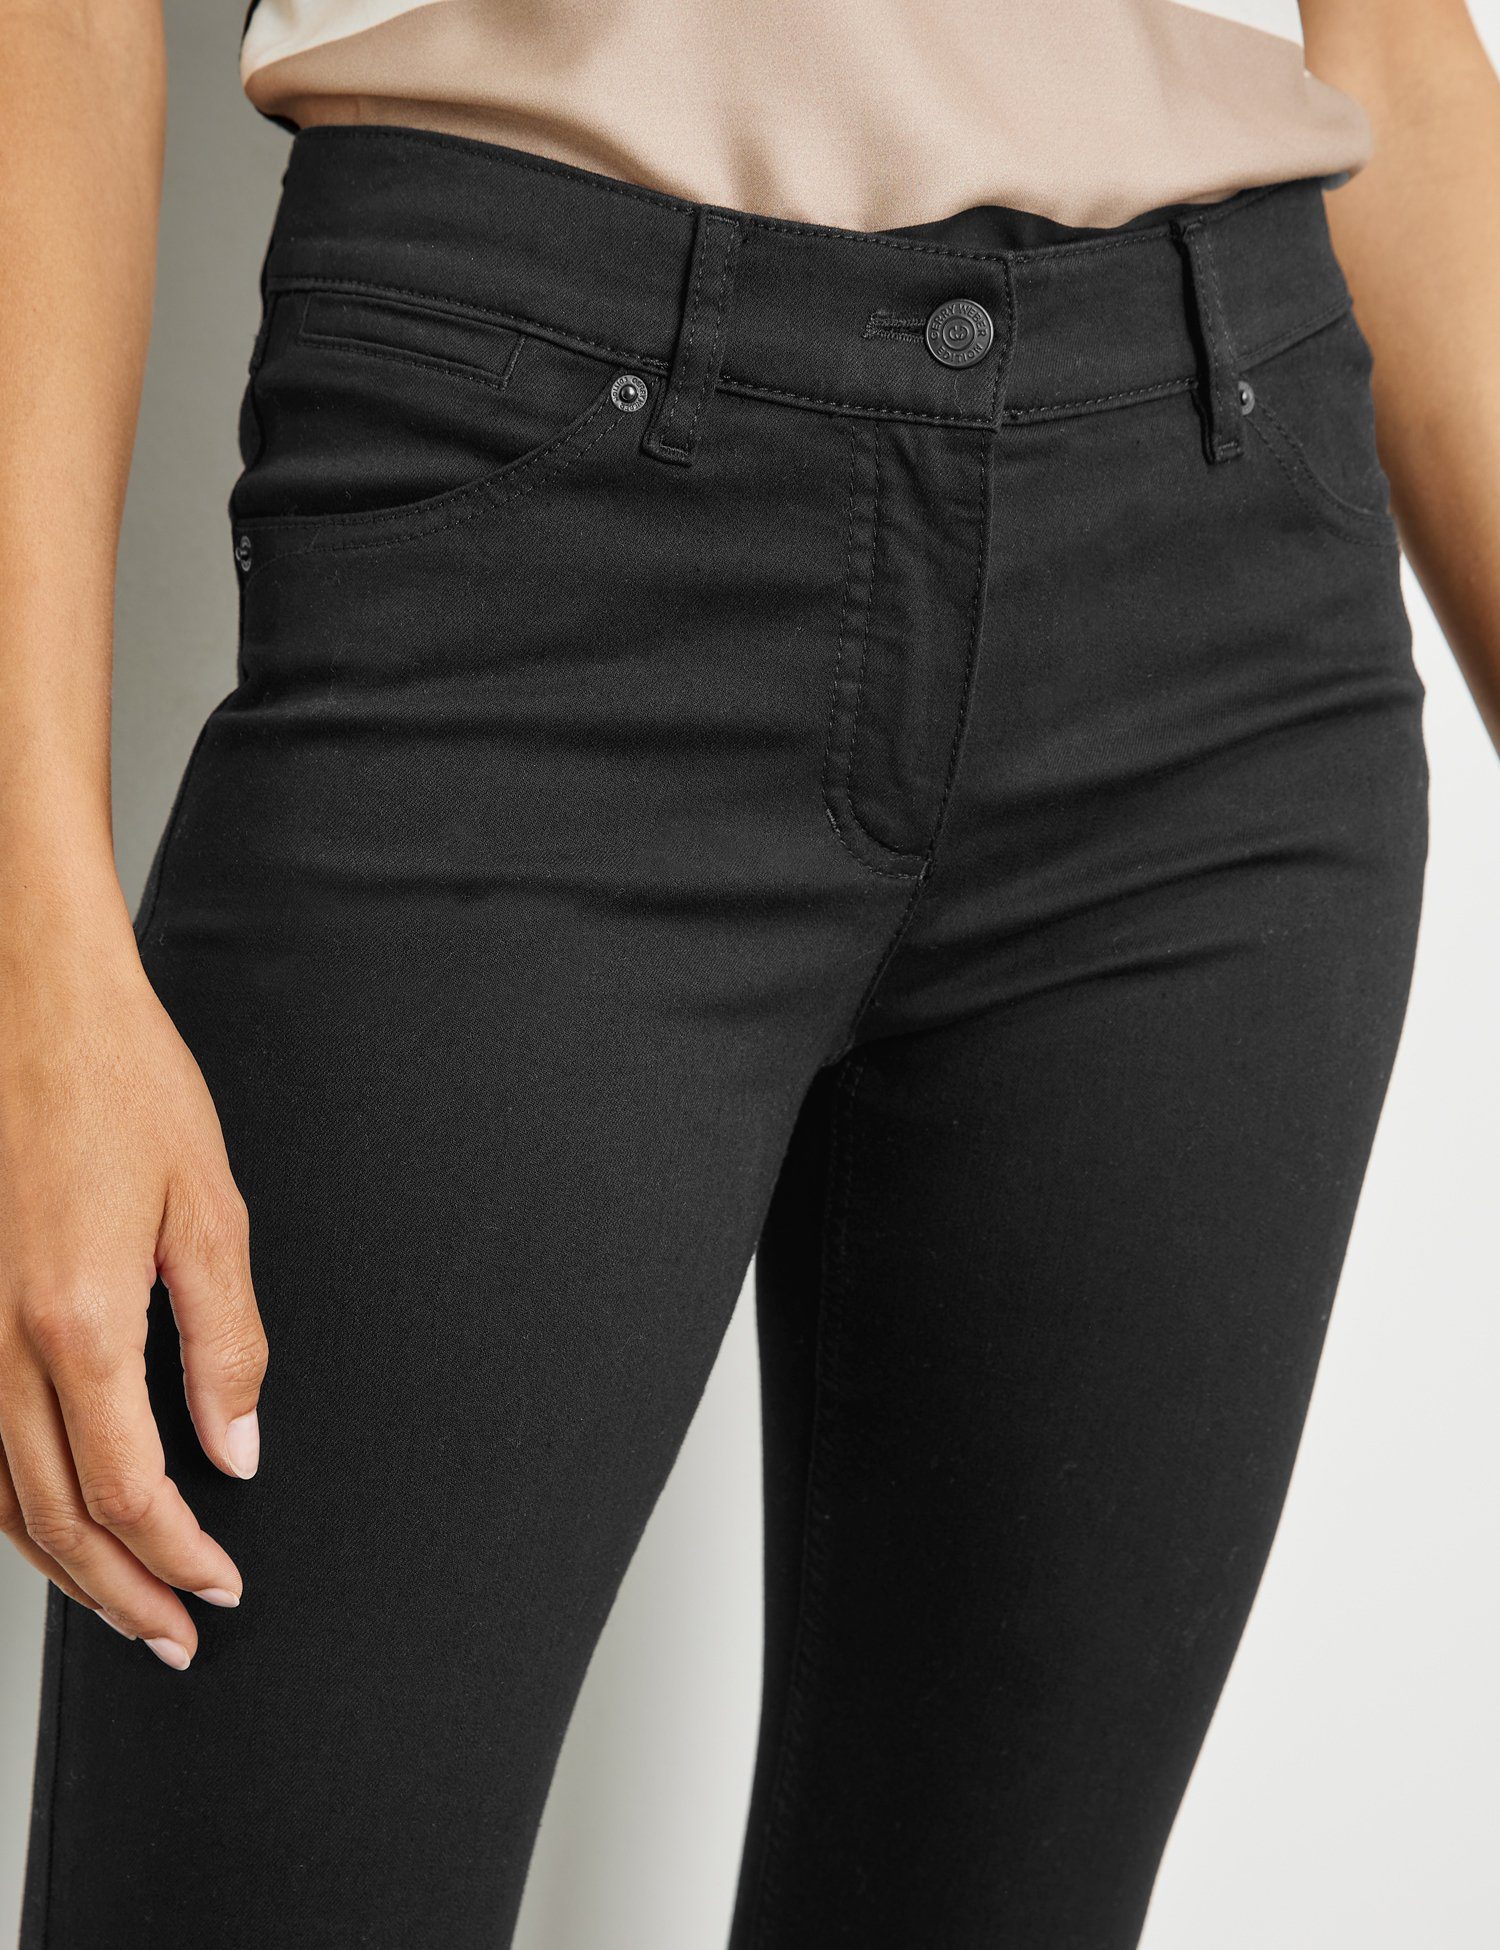 GERRY Stretch-Jeans Black Black Best4me Jeans Denim WEBER 5-Pocket Skinny